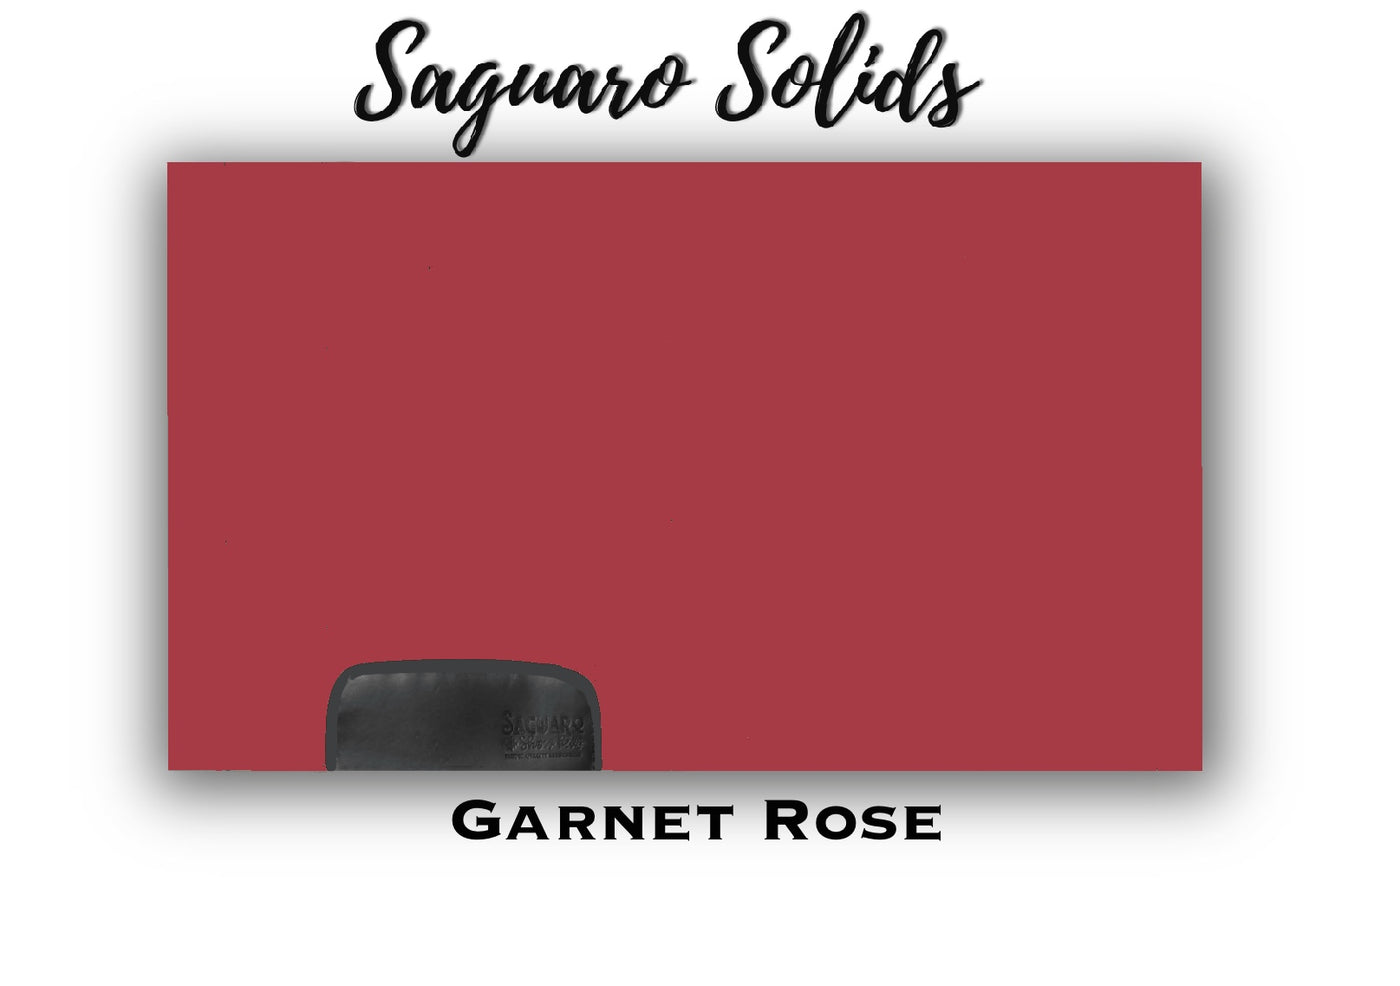 Saguaro Solid "Garnet Rose" Show Pad (SEMI-CUSTOM)